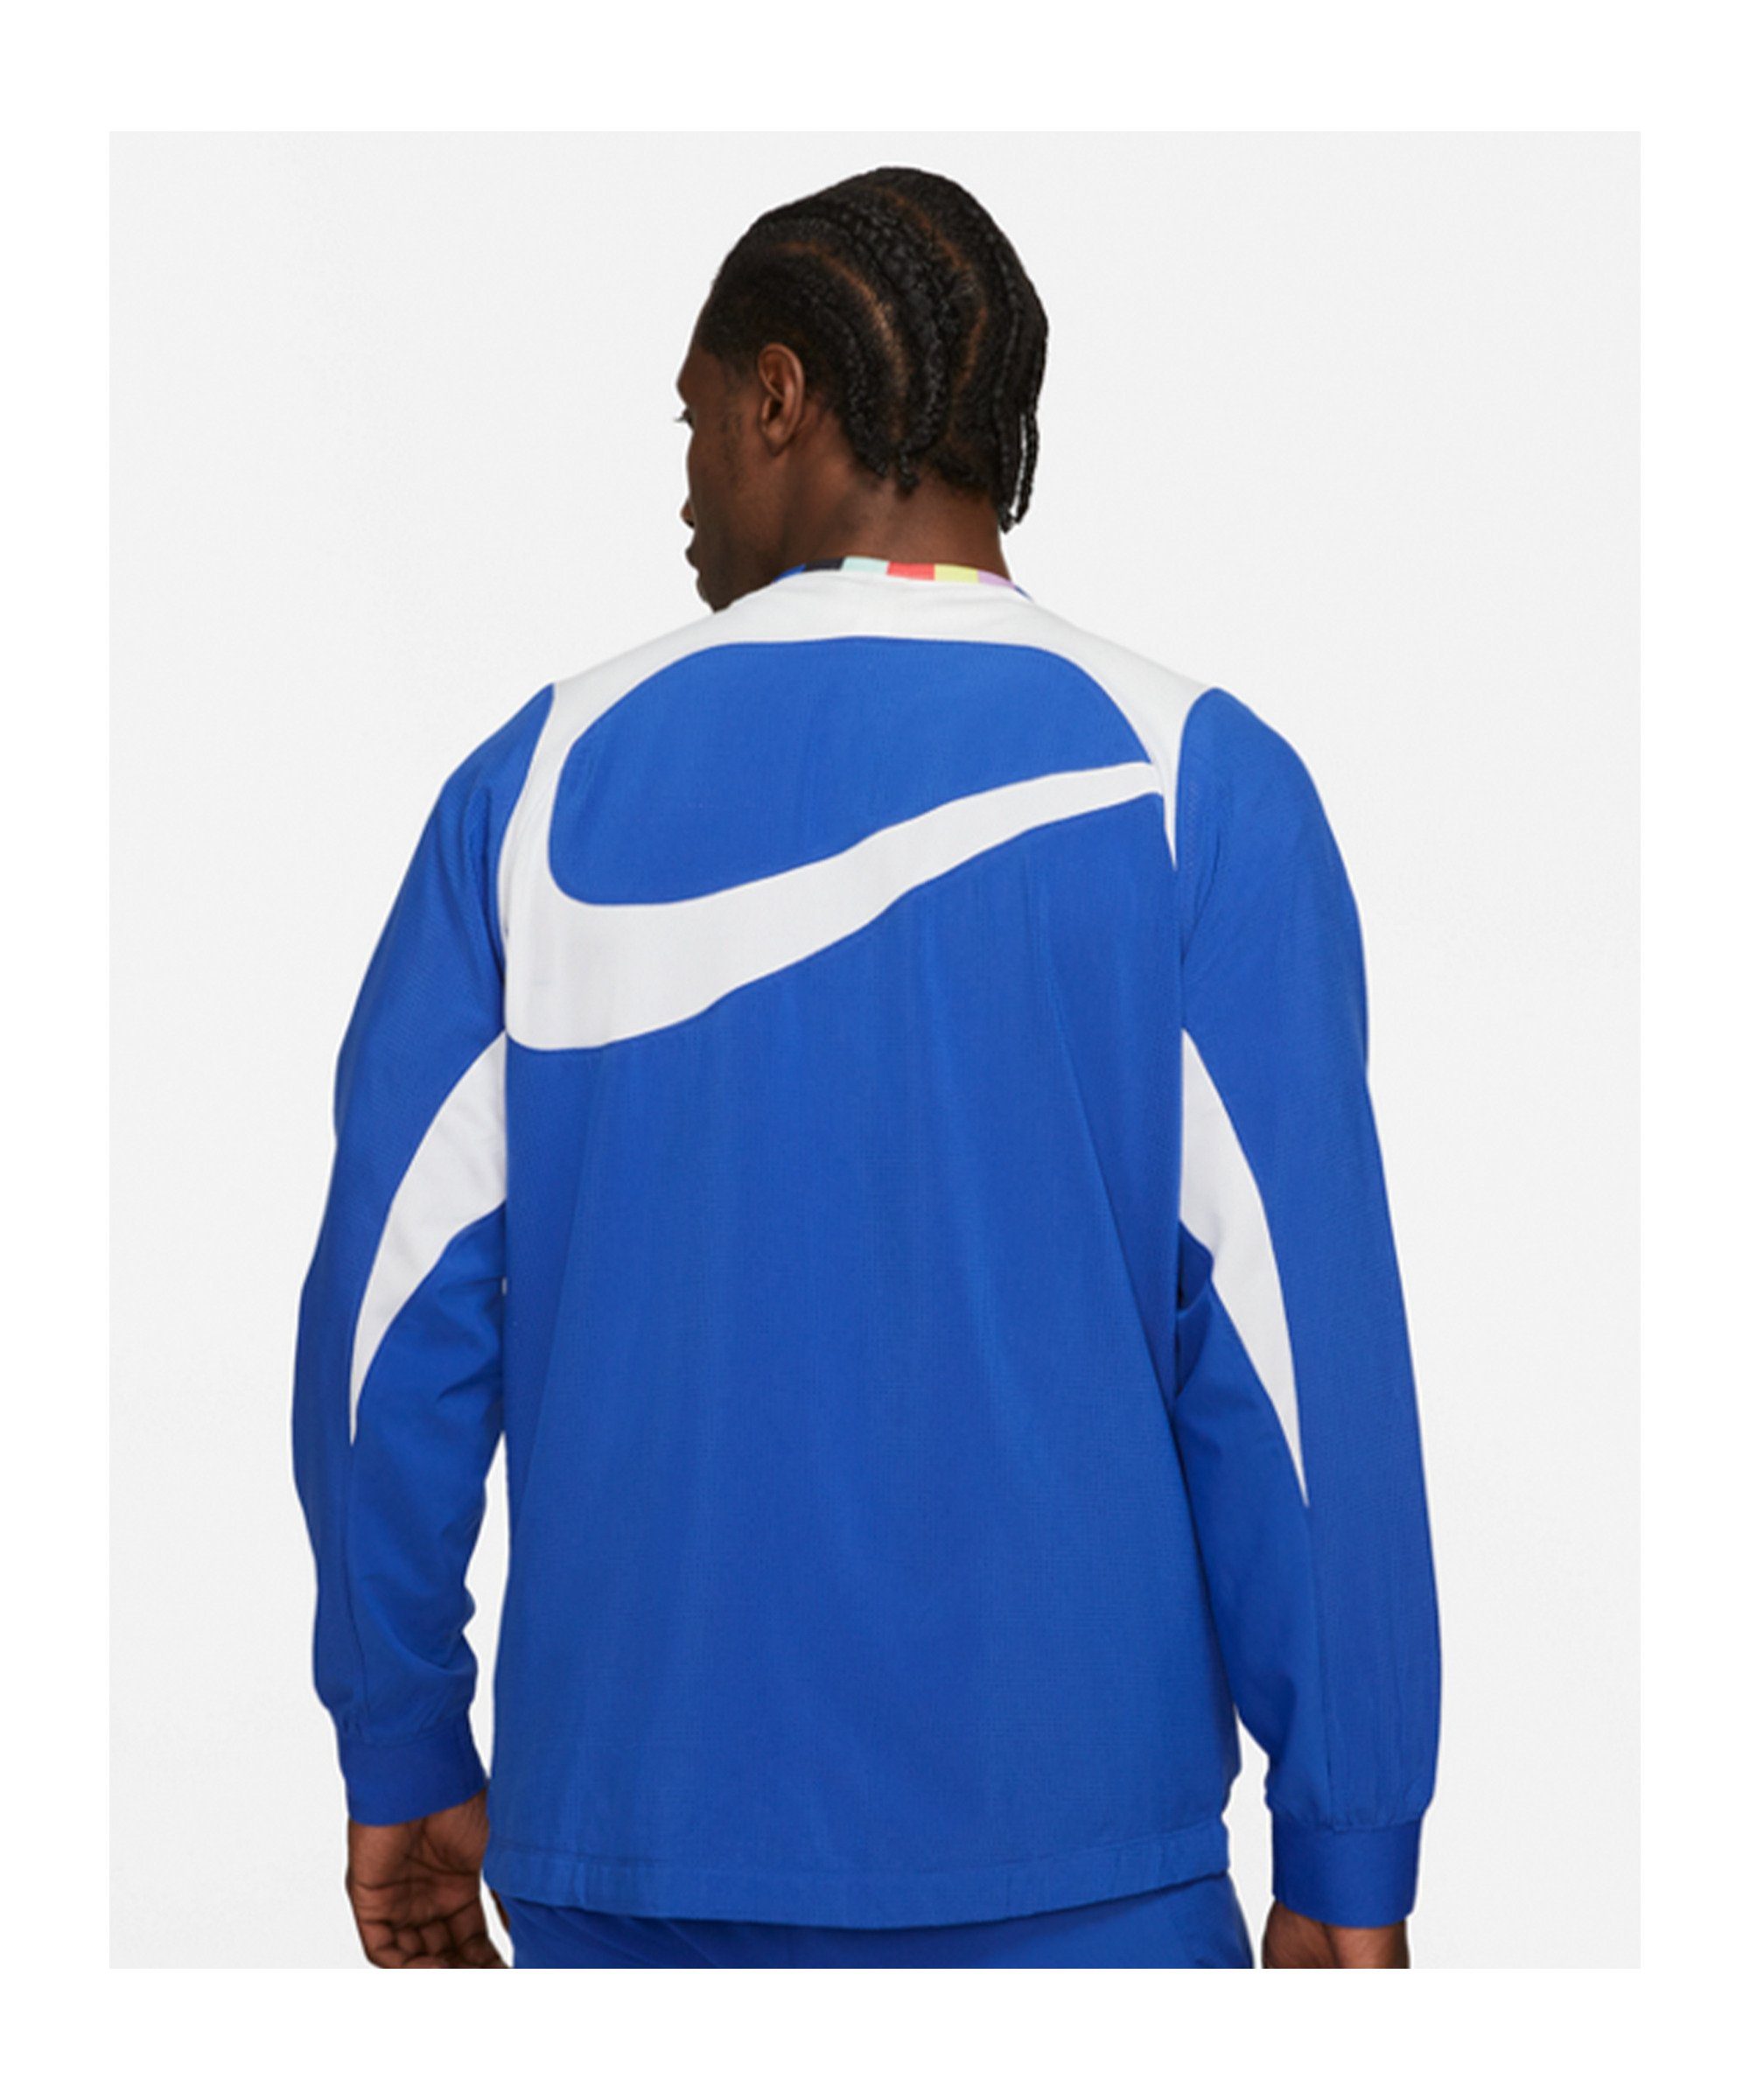 Nike Sportswear Sweatjacke F.C. Joga Bonito Woven blauweiss Jacke